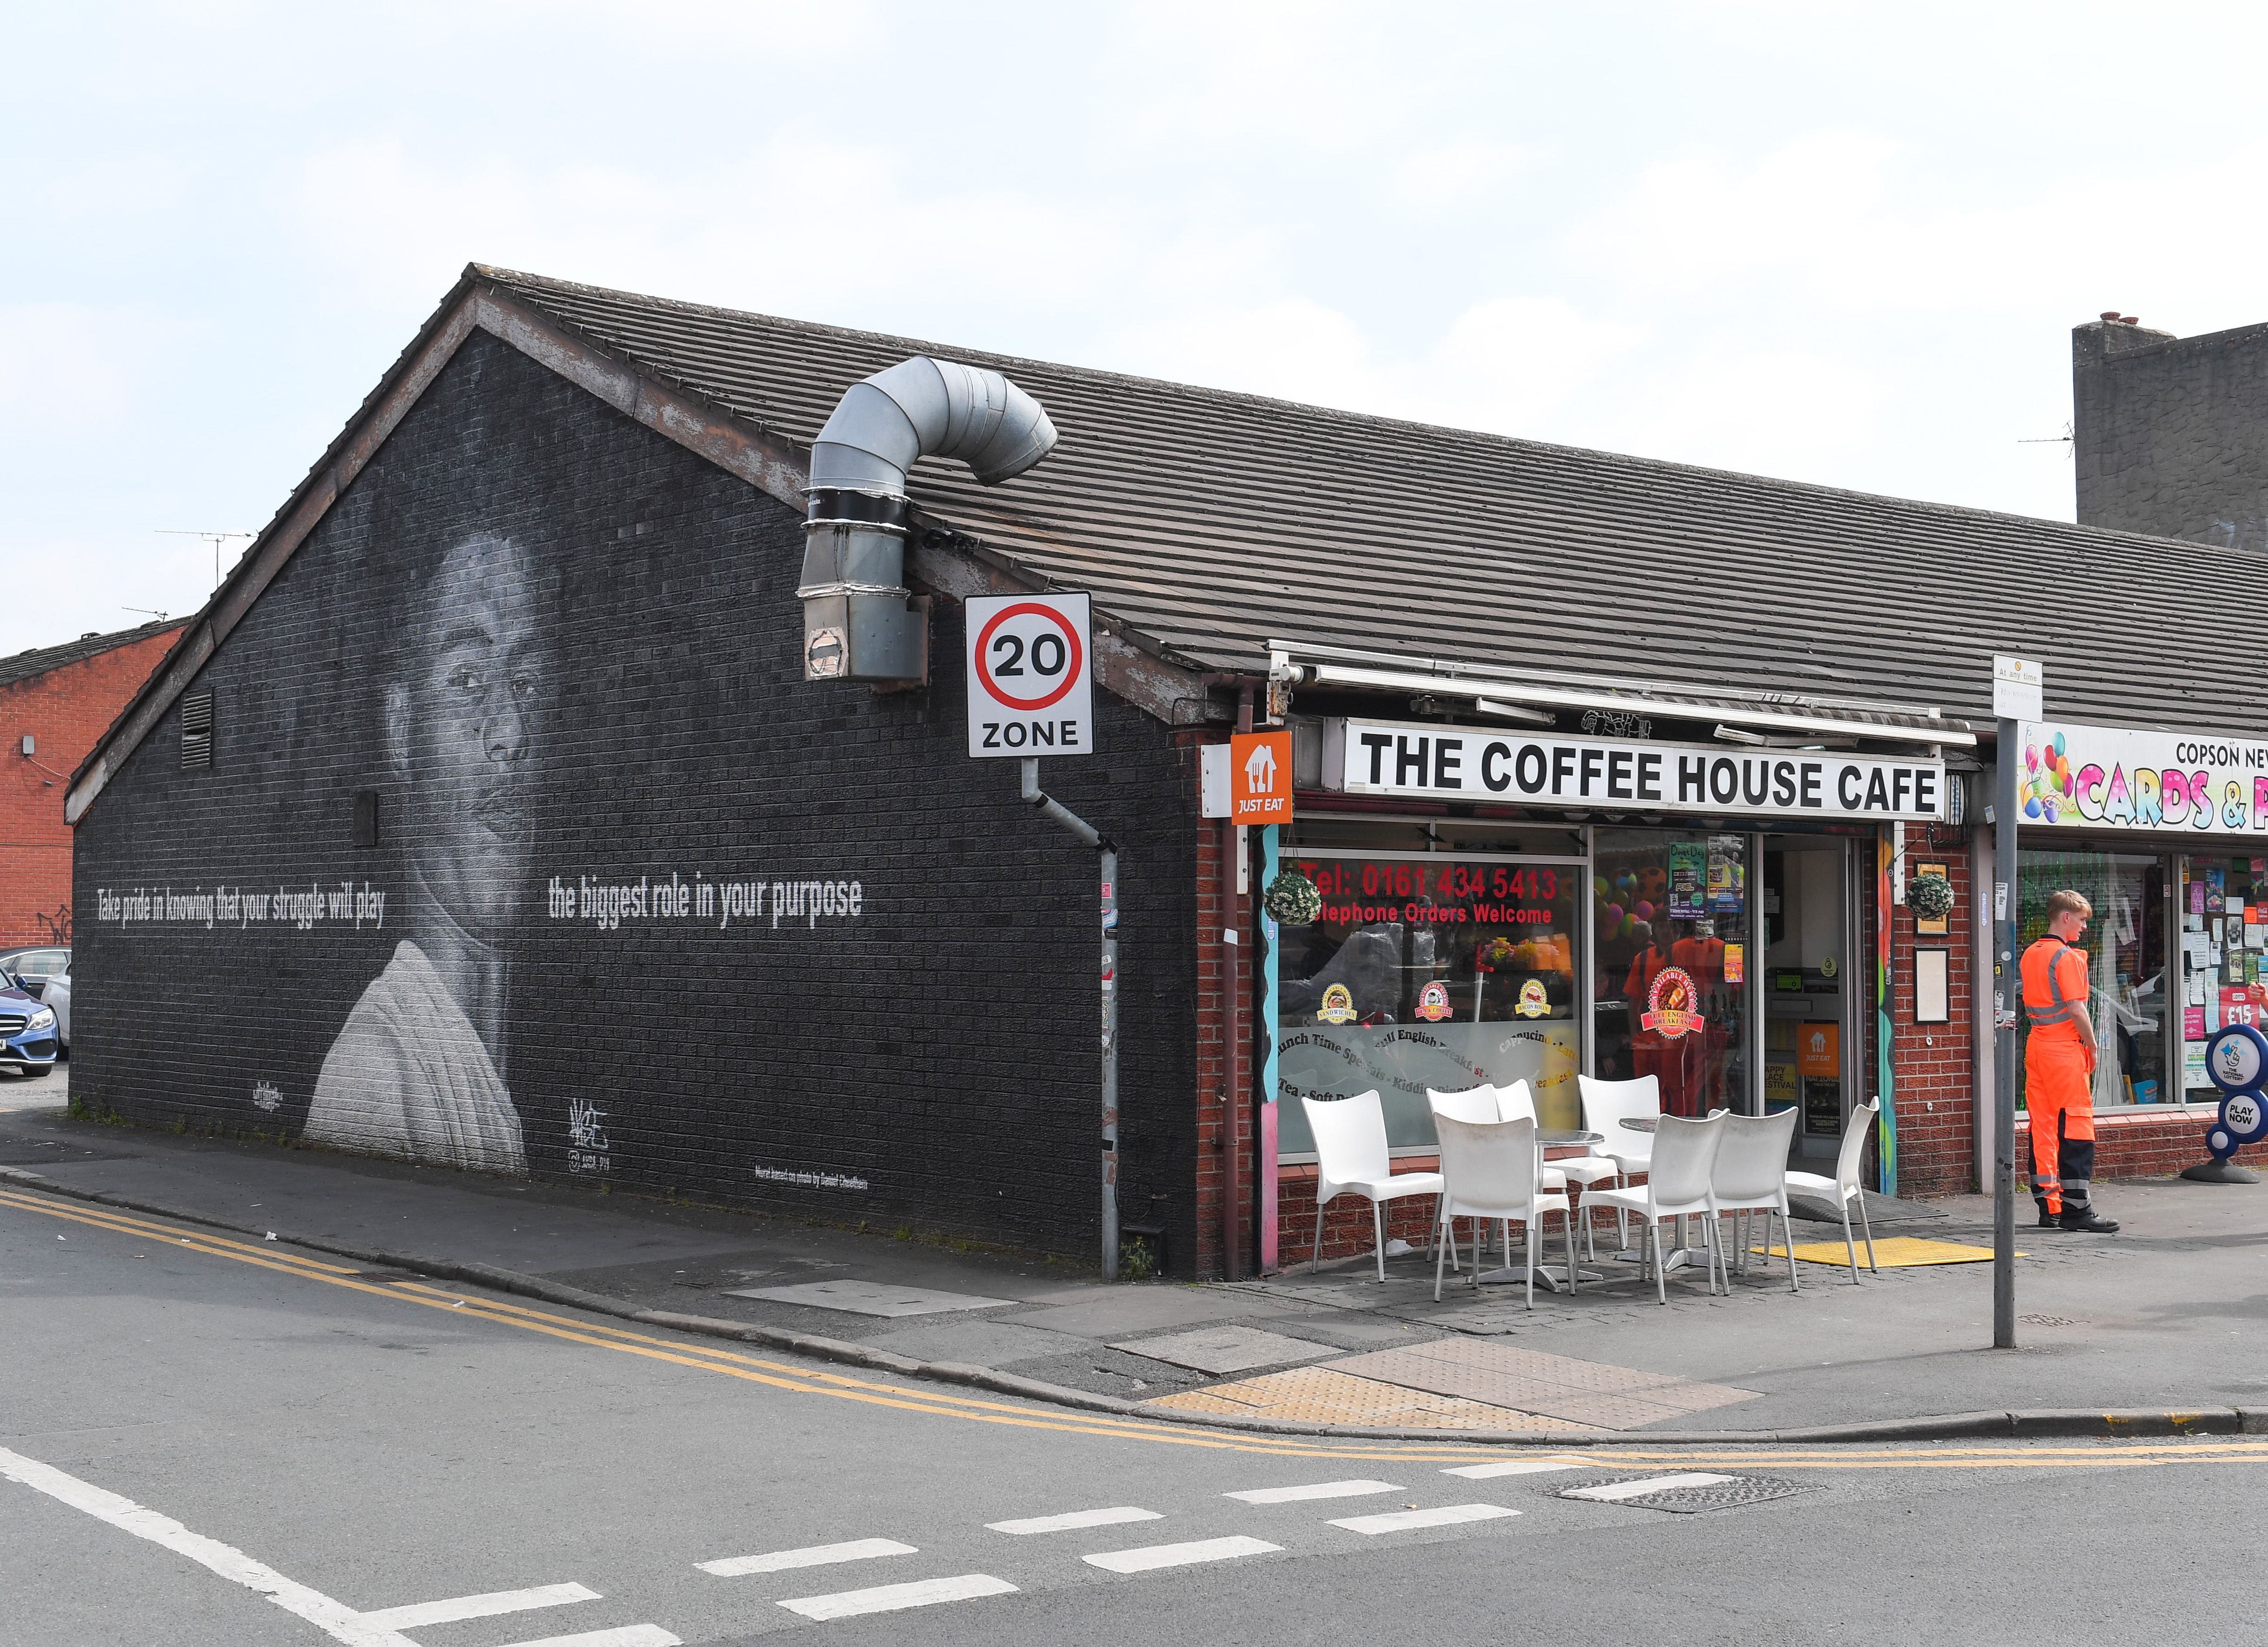 Das The Coffee House Café in Manchester hat außen ein riesiges Wandgemälde von Marcus Rashford